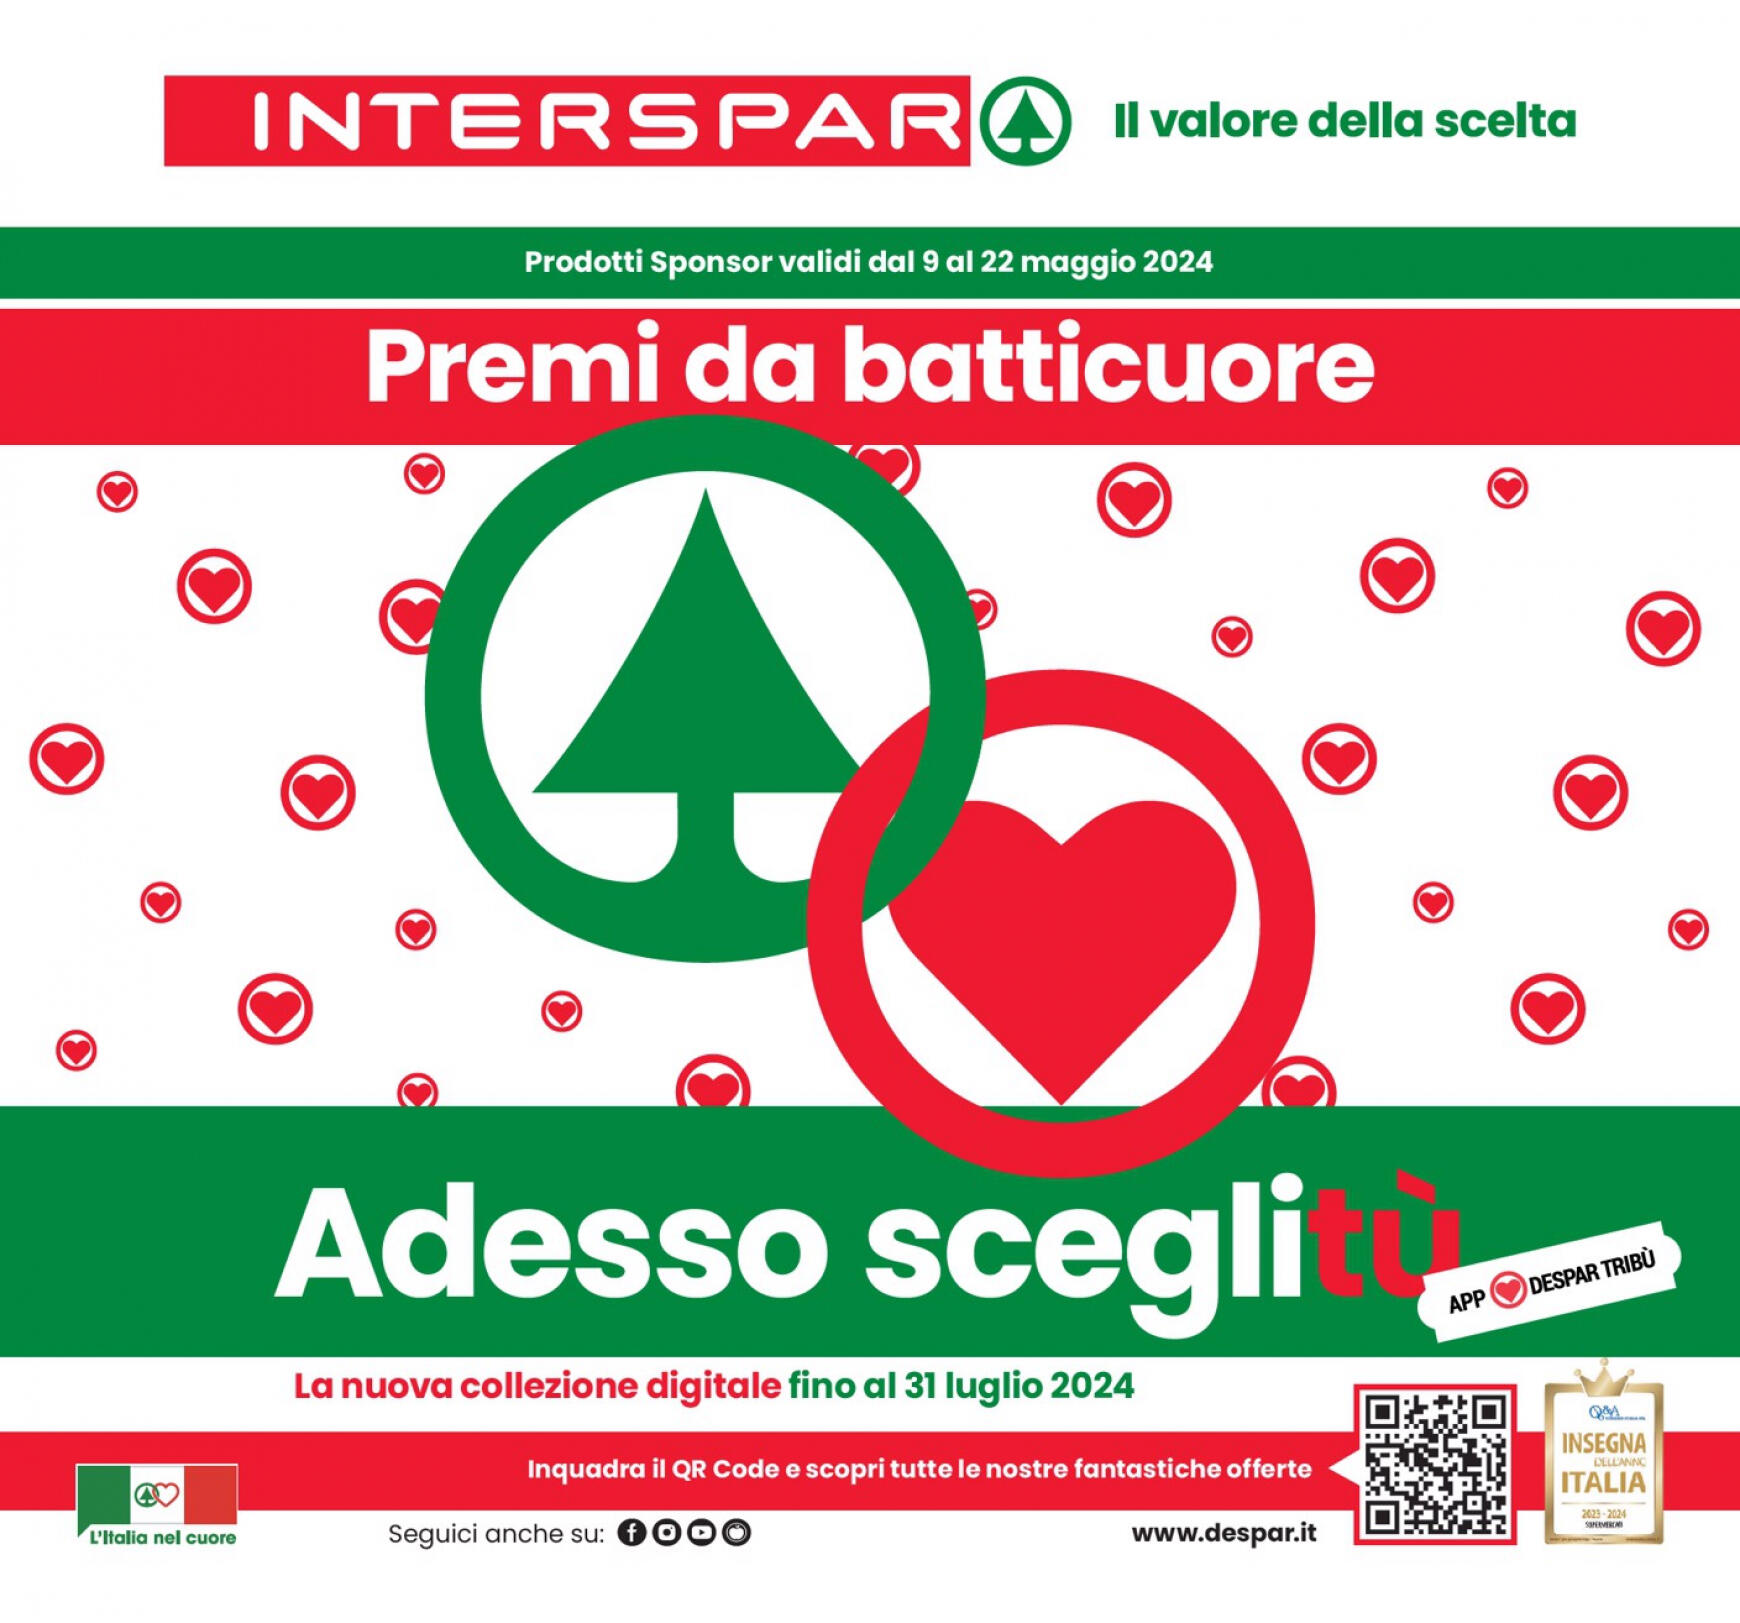 interspar - Nuovo volantino INTERSPAR - Premi da batticuore. Adesso sceglitù 09.05. - 22.05. - page: 1